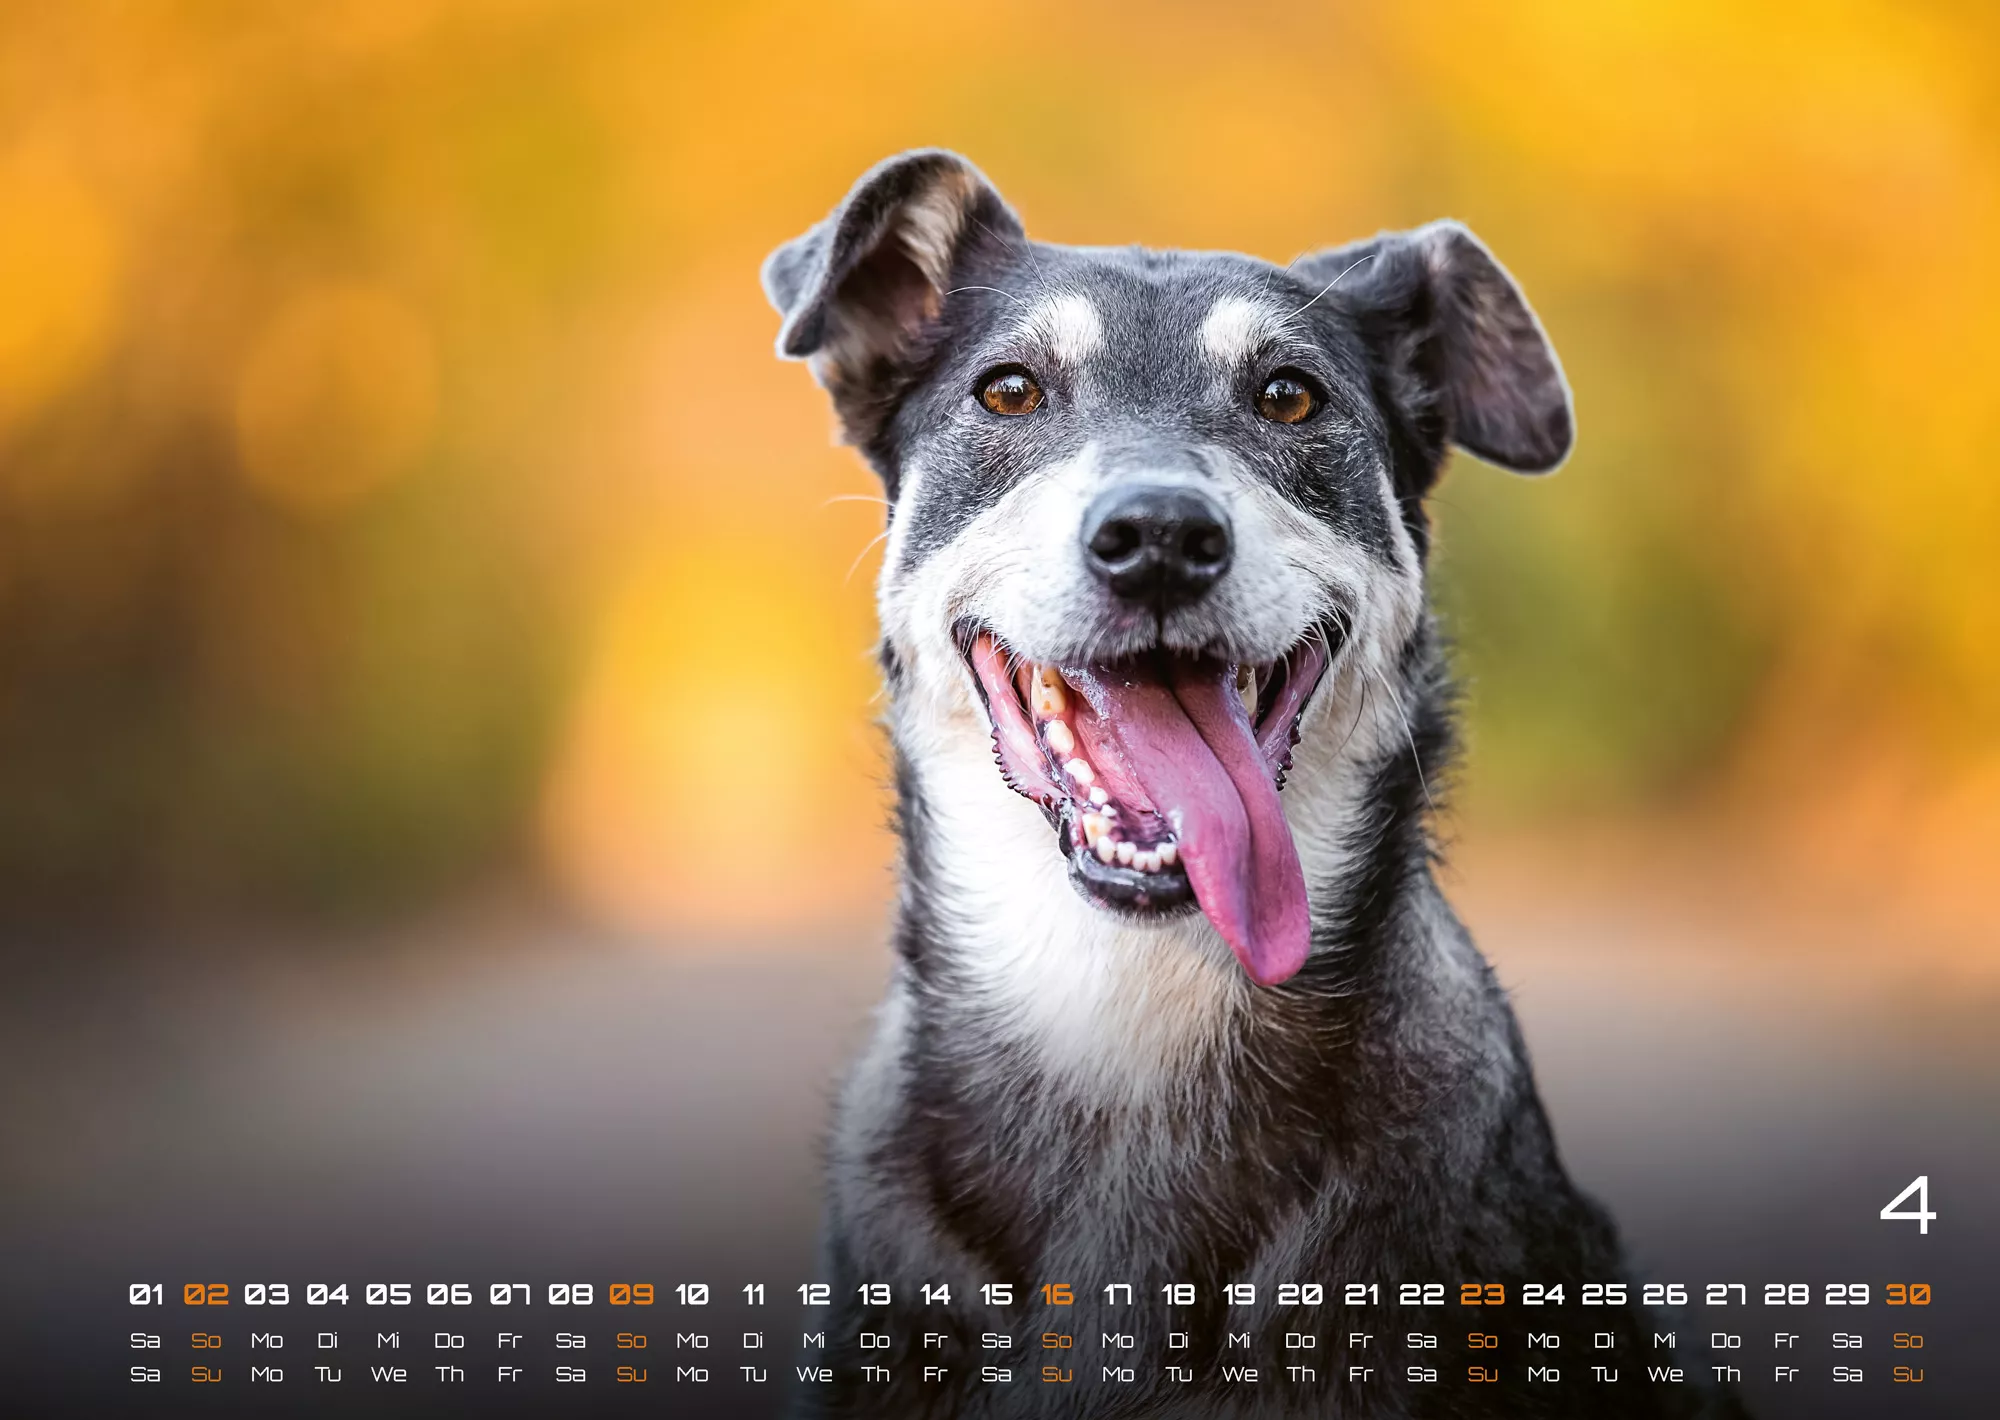 Wuff - Unsere Vierbeiner - Der Hundekalender- 2023 - Kalender